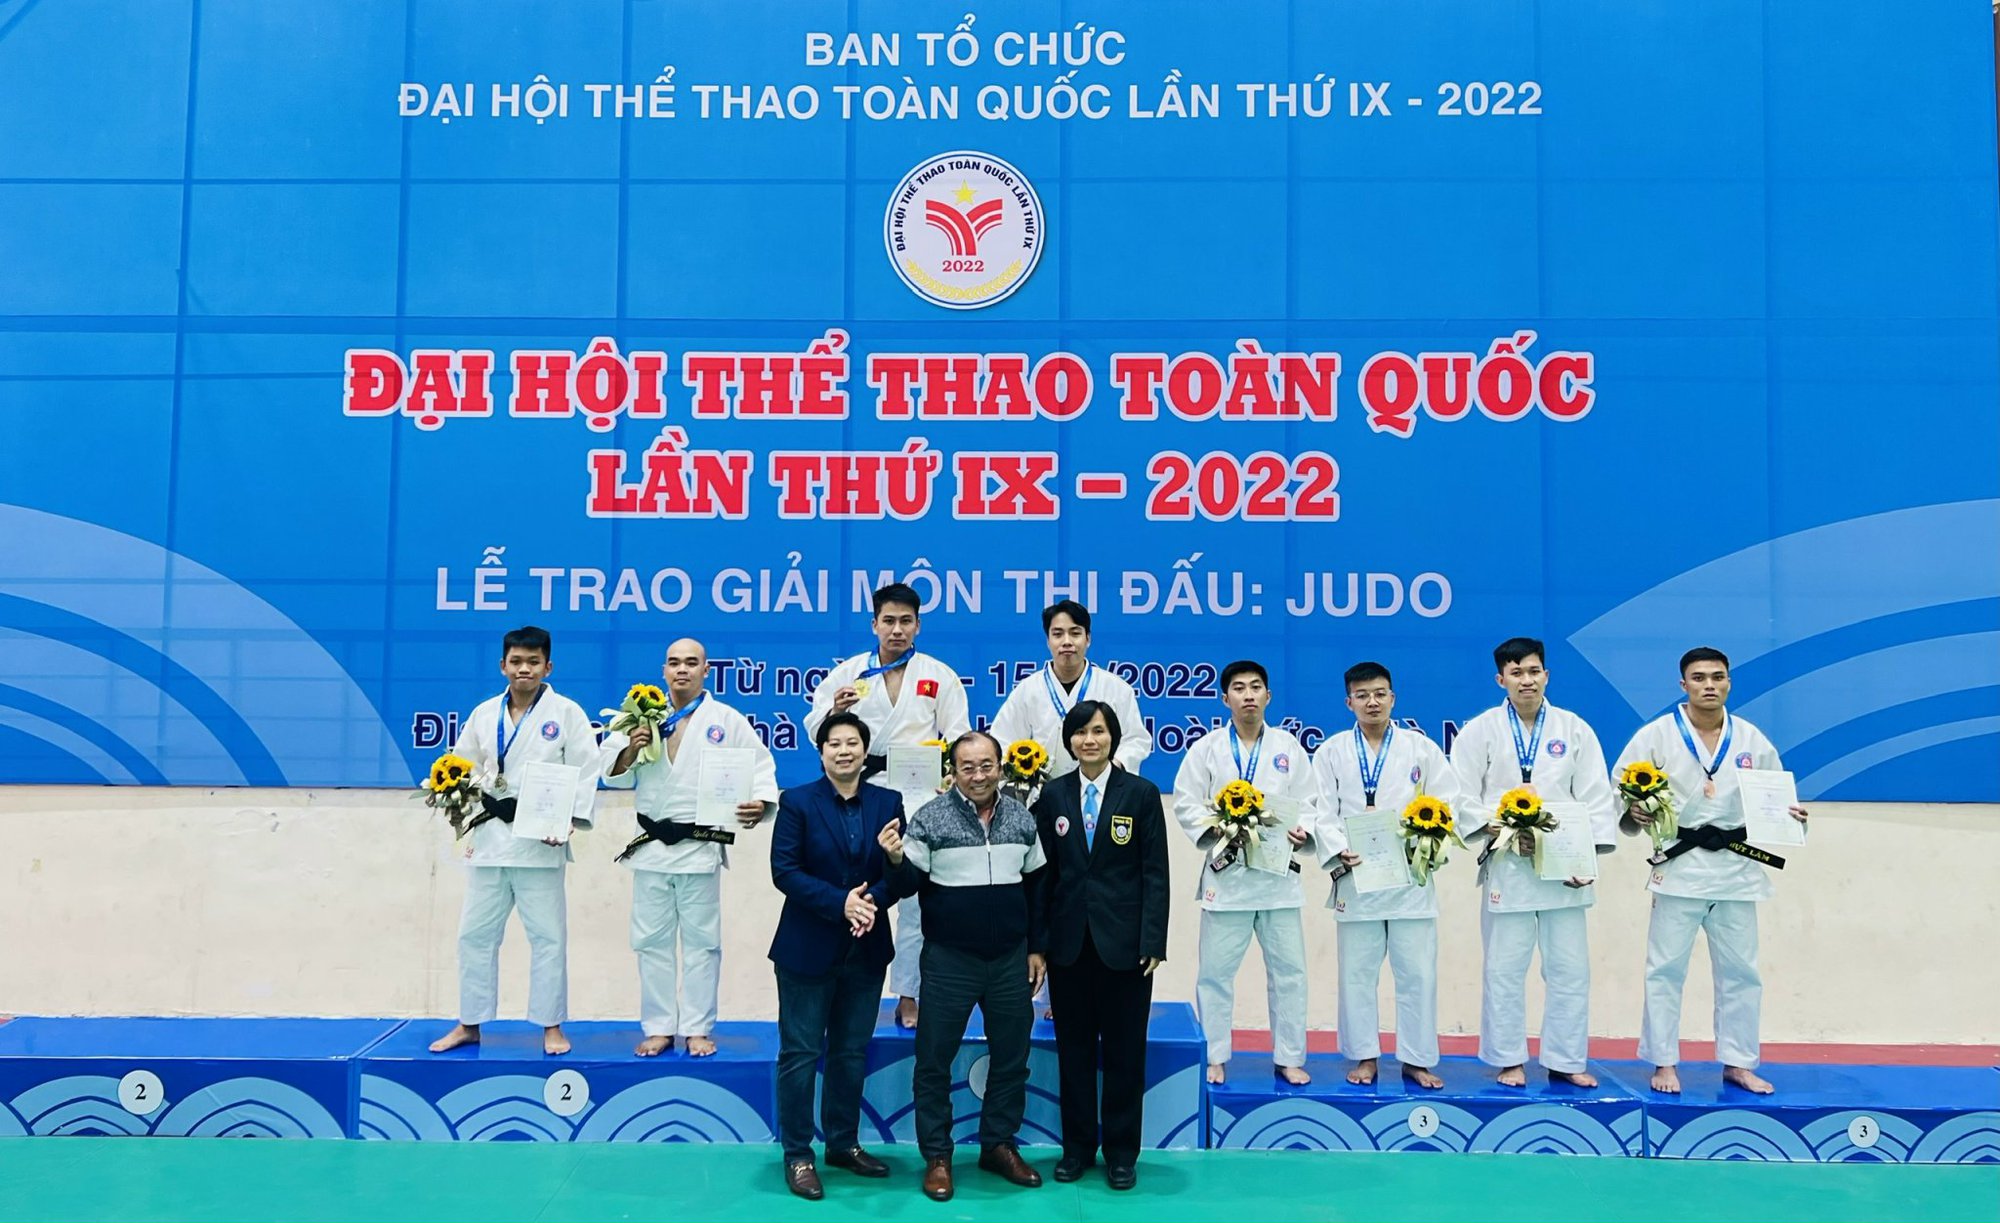 Đại hội Thể thao toàn quốc lần thứ IX: TP. HCM dẫn đầu môn Judo; Hà Nội, Thái Bình giành vàng môn Cầu lông - Ảnh 1.